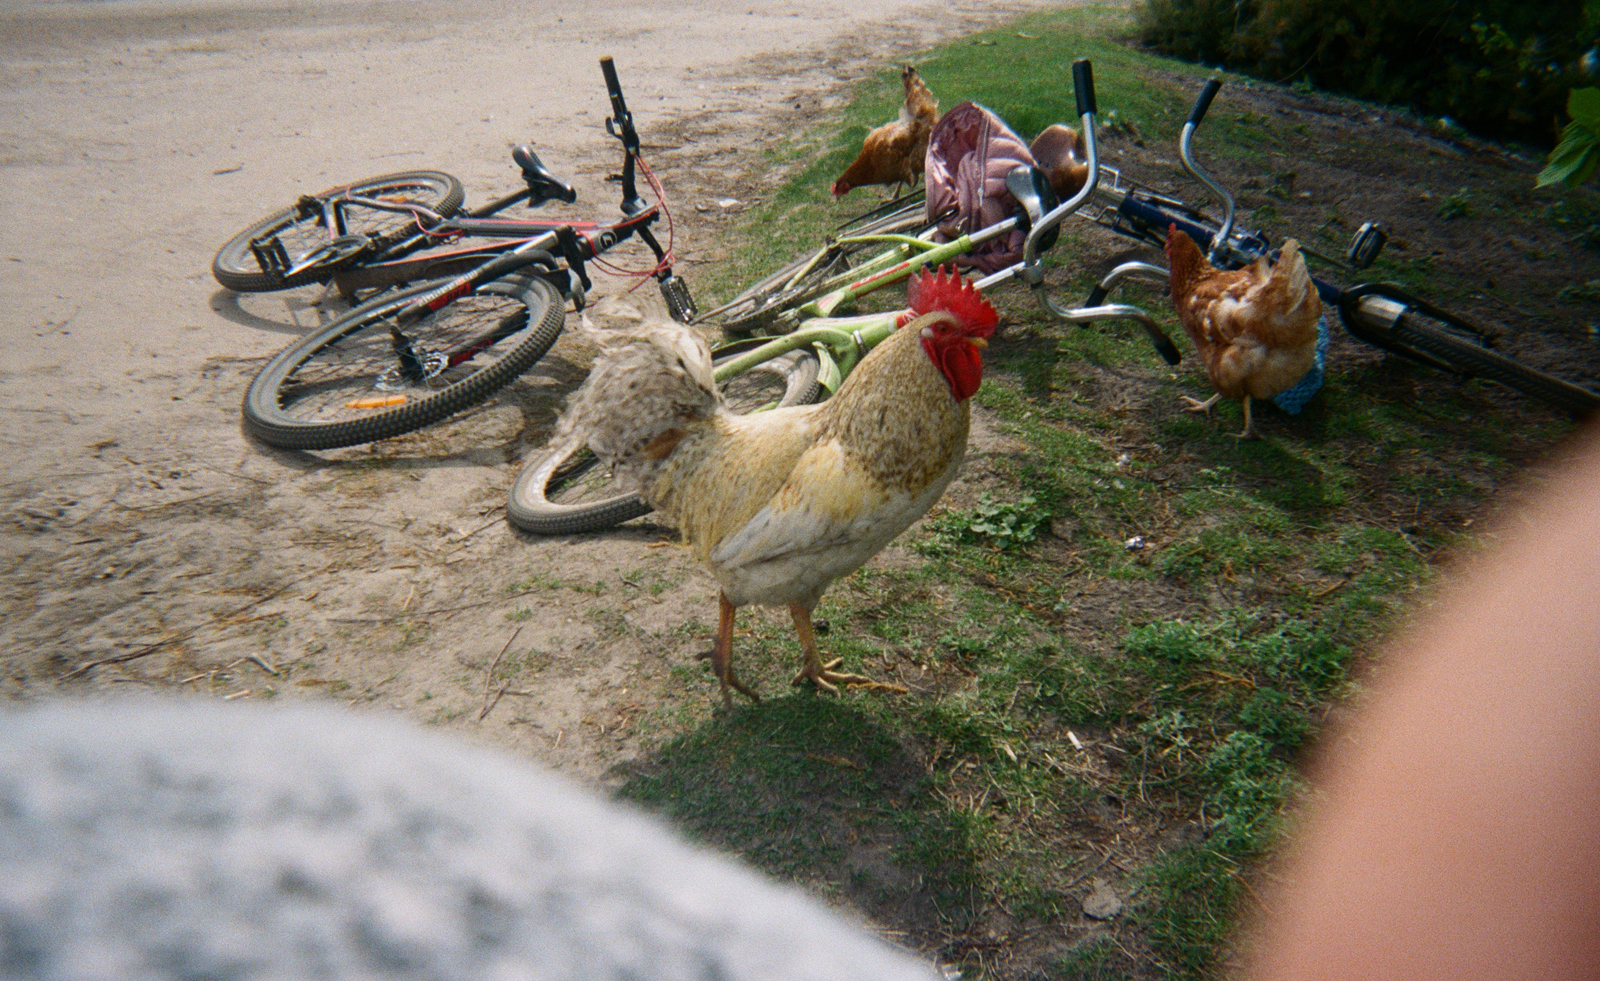 cockerel and hens wander around children's bikes on ground